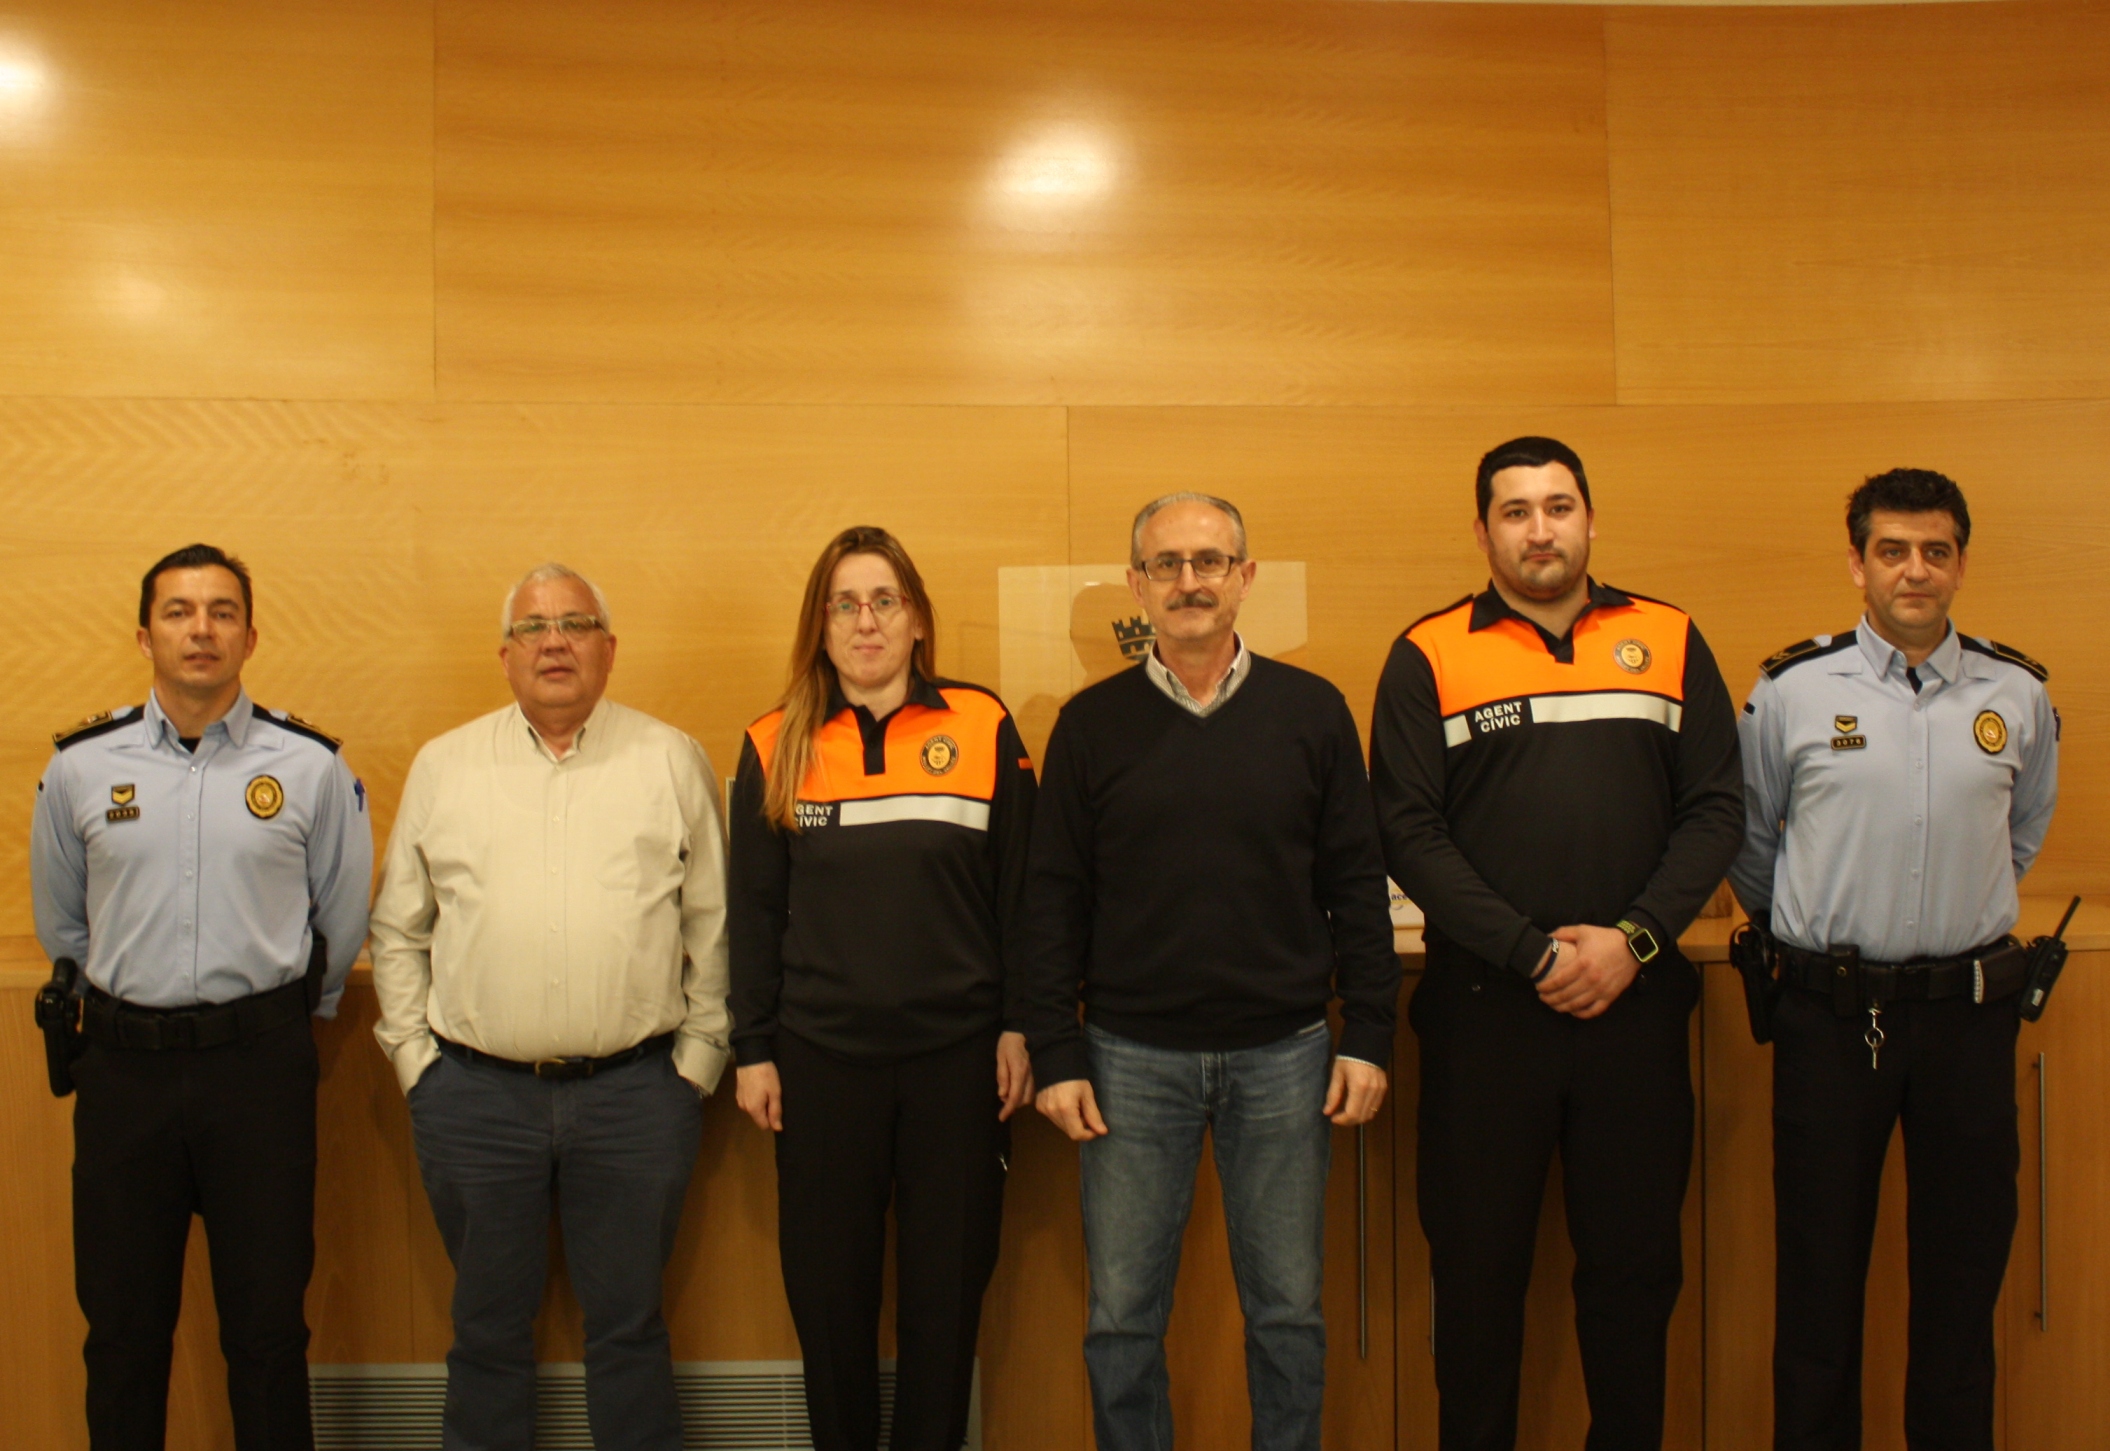 Els nous agents amb l'alcalde, Josep Monràs, el regidor Josep Garzón, i agents de la Policia Municipal